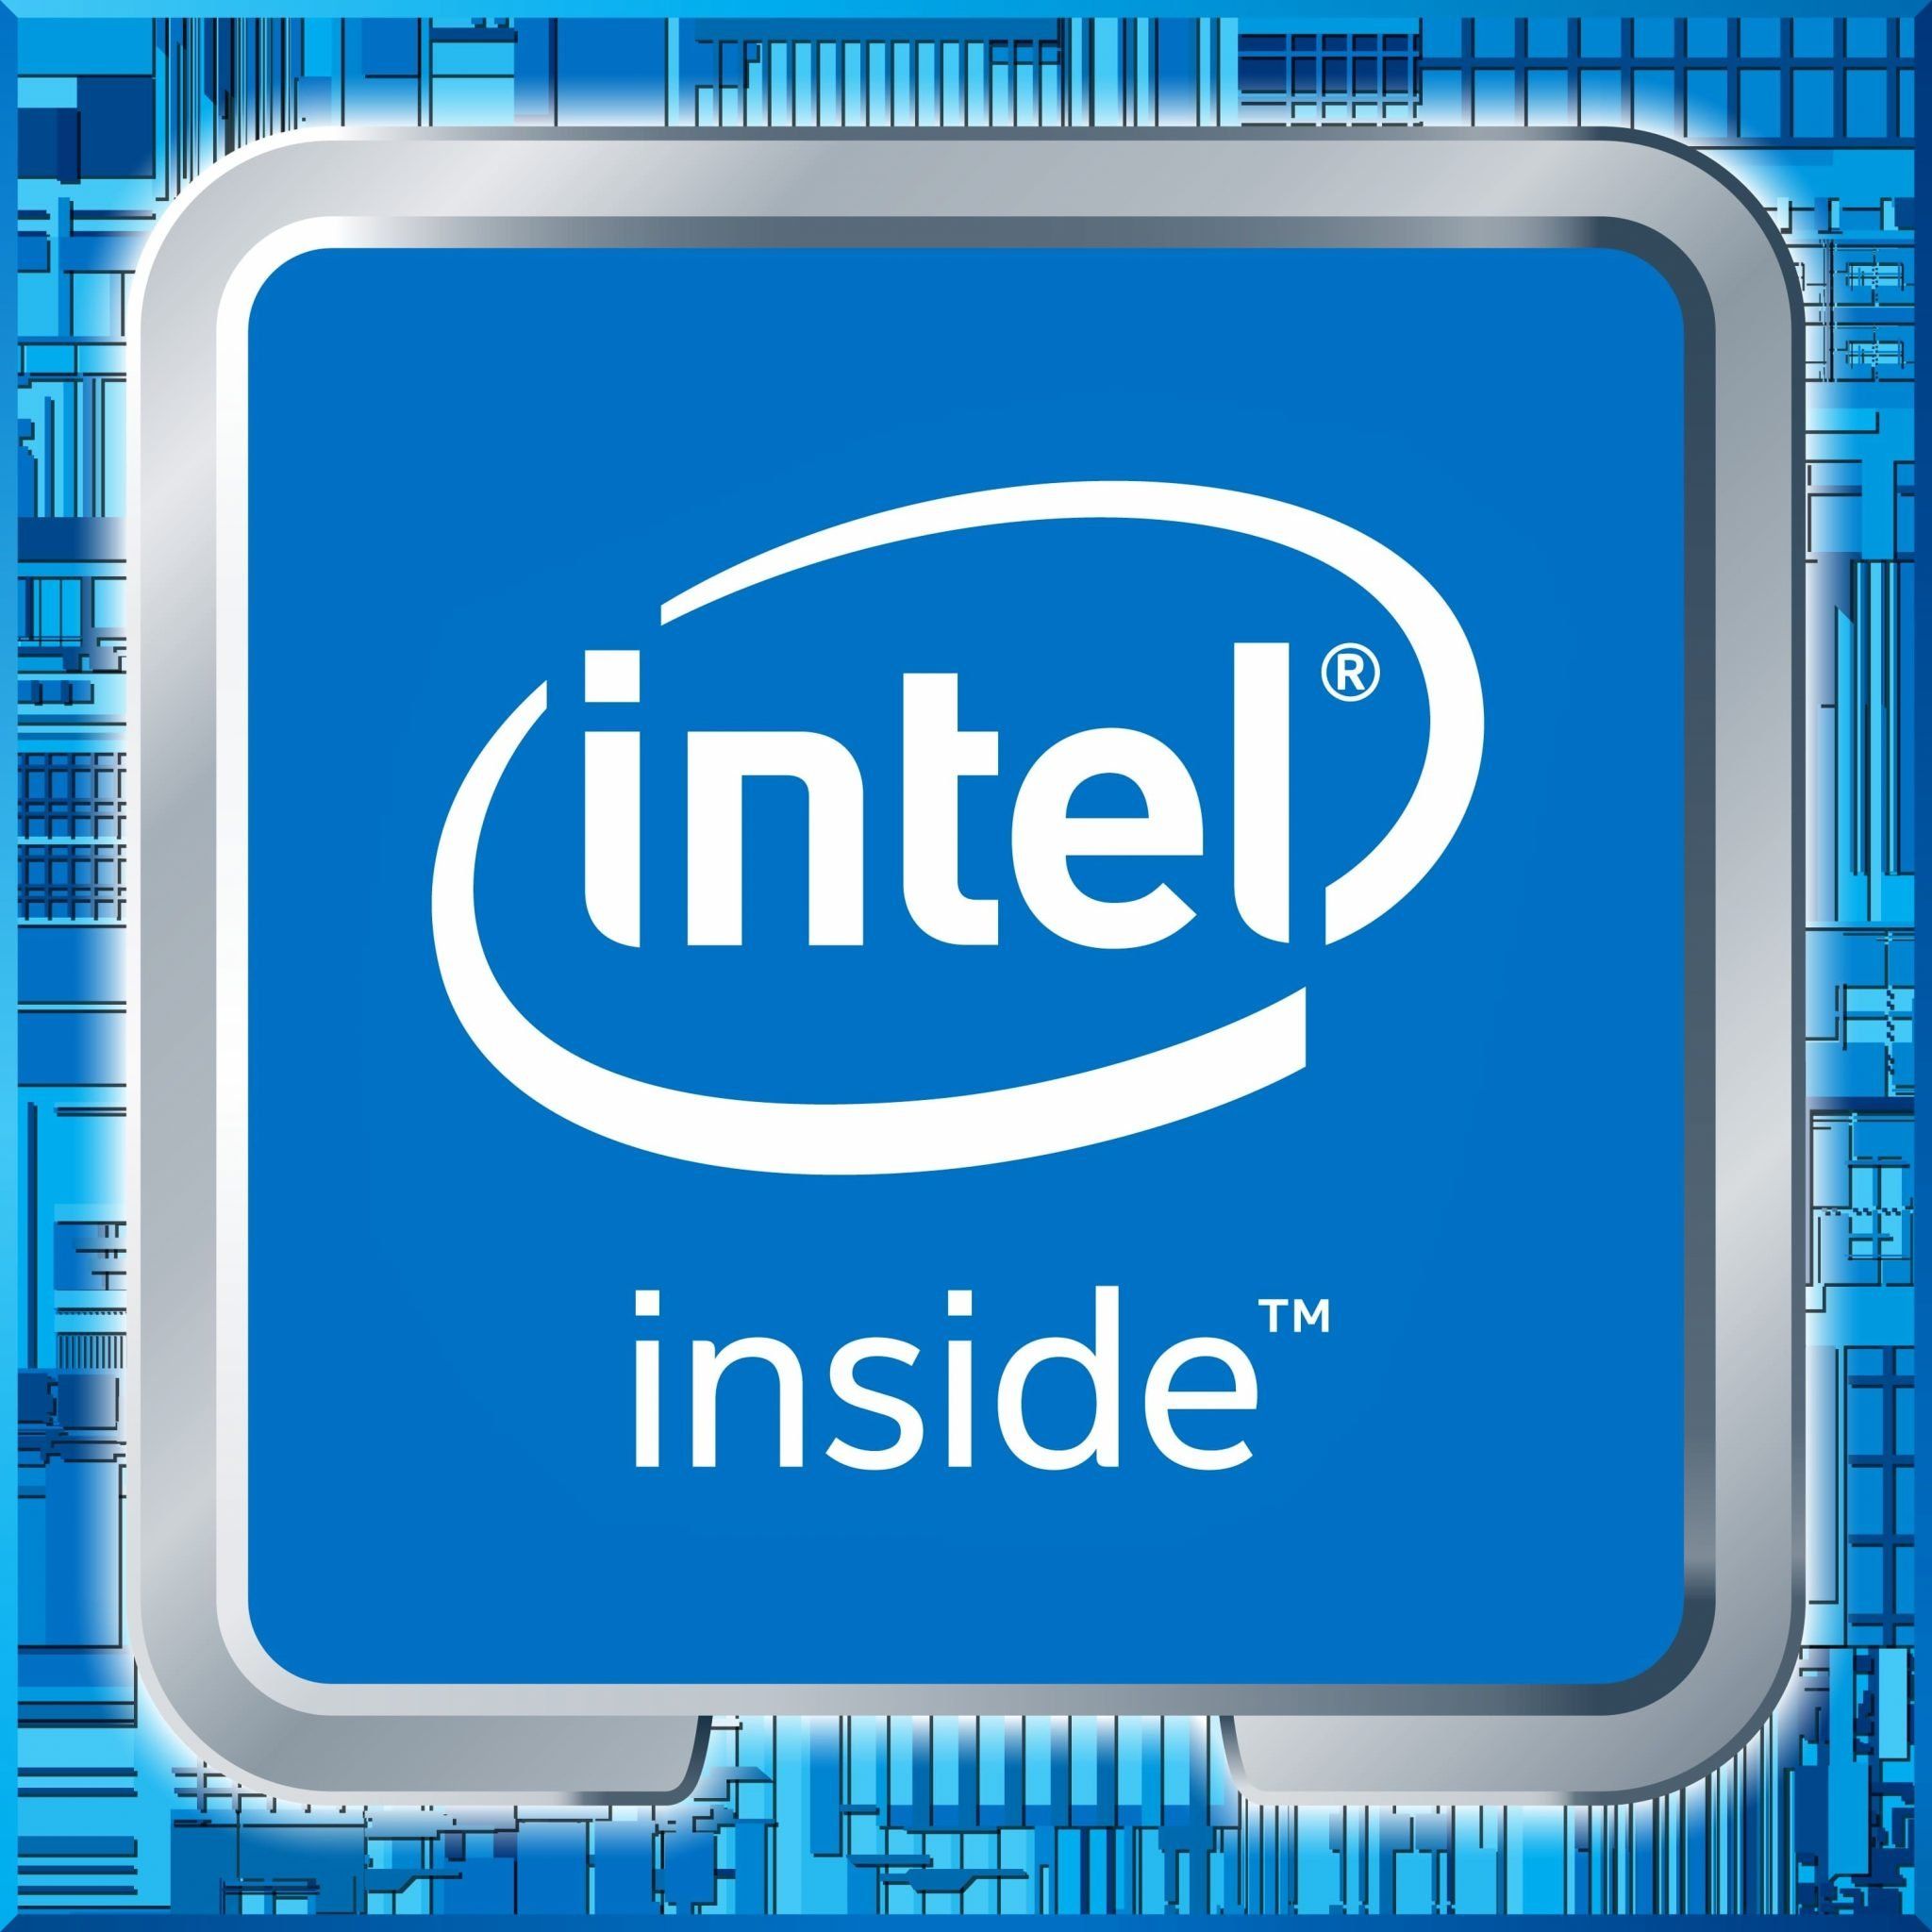 Выбирайте интел. Intel inside Core i7 logo. Интел пентиум инсайд. Intel Celeron inside logo. Процессор Intel inside.